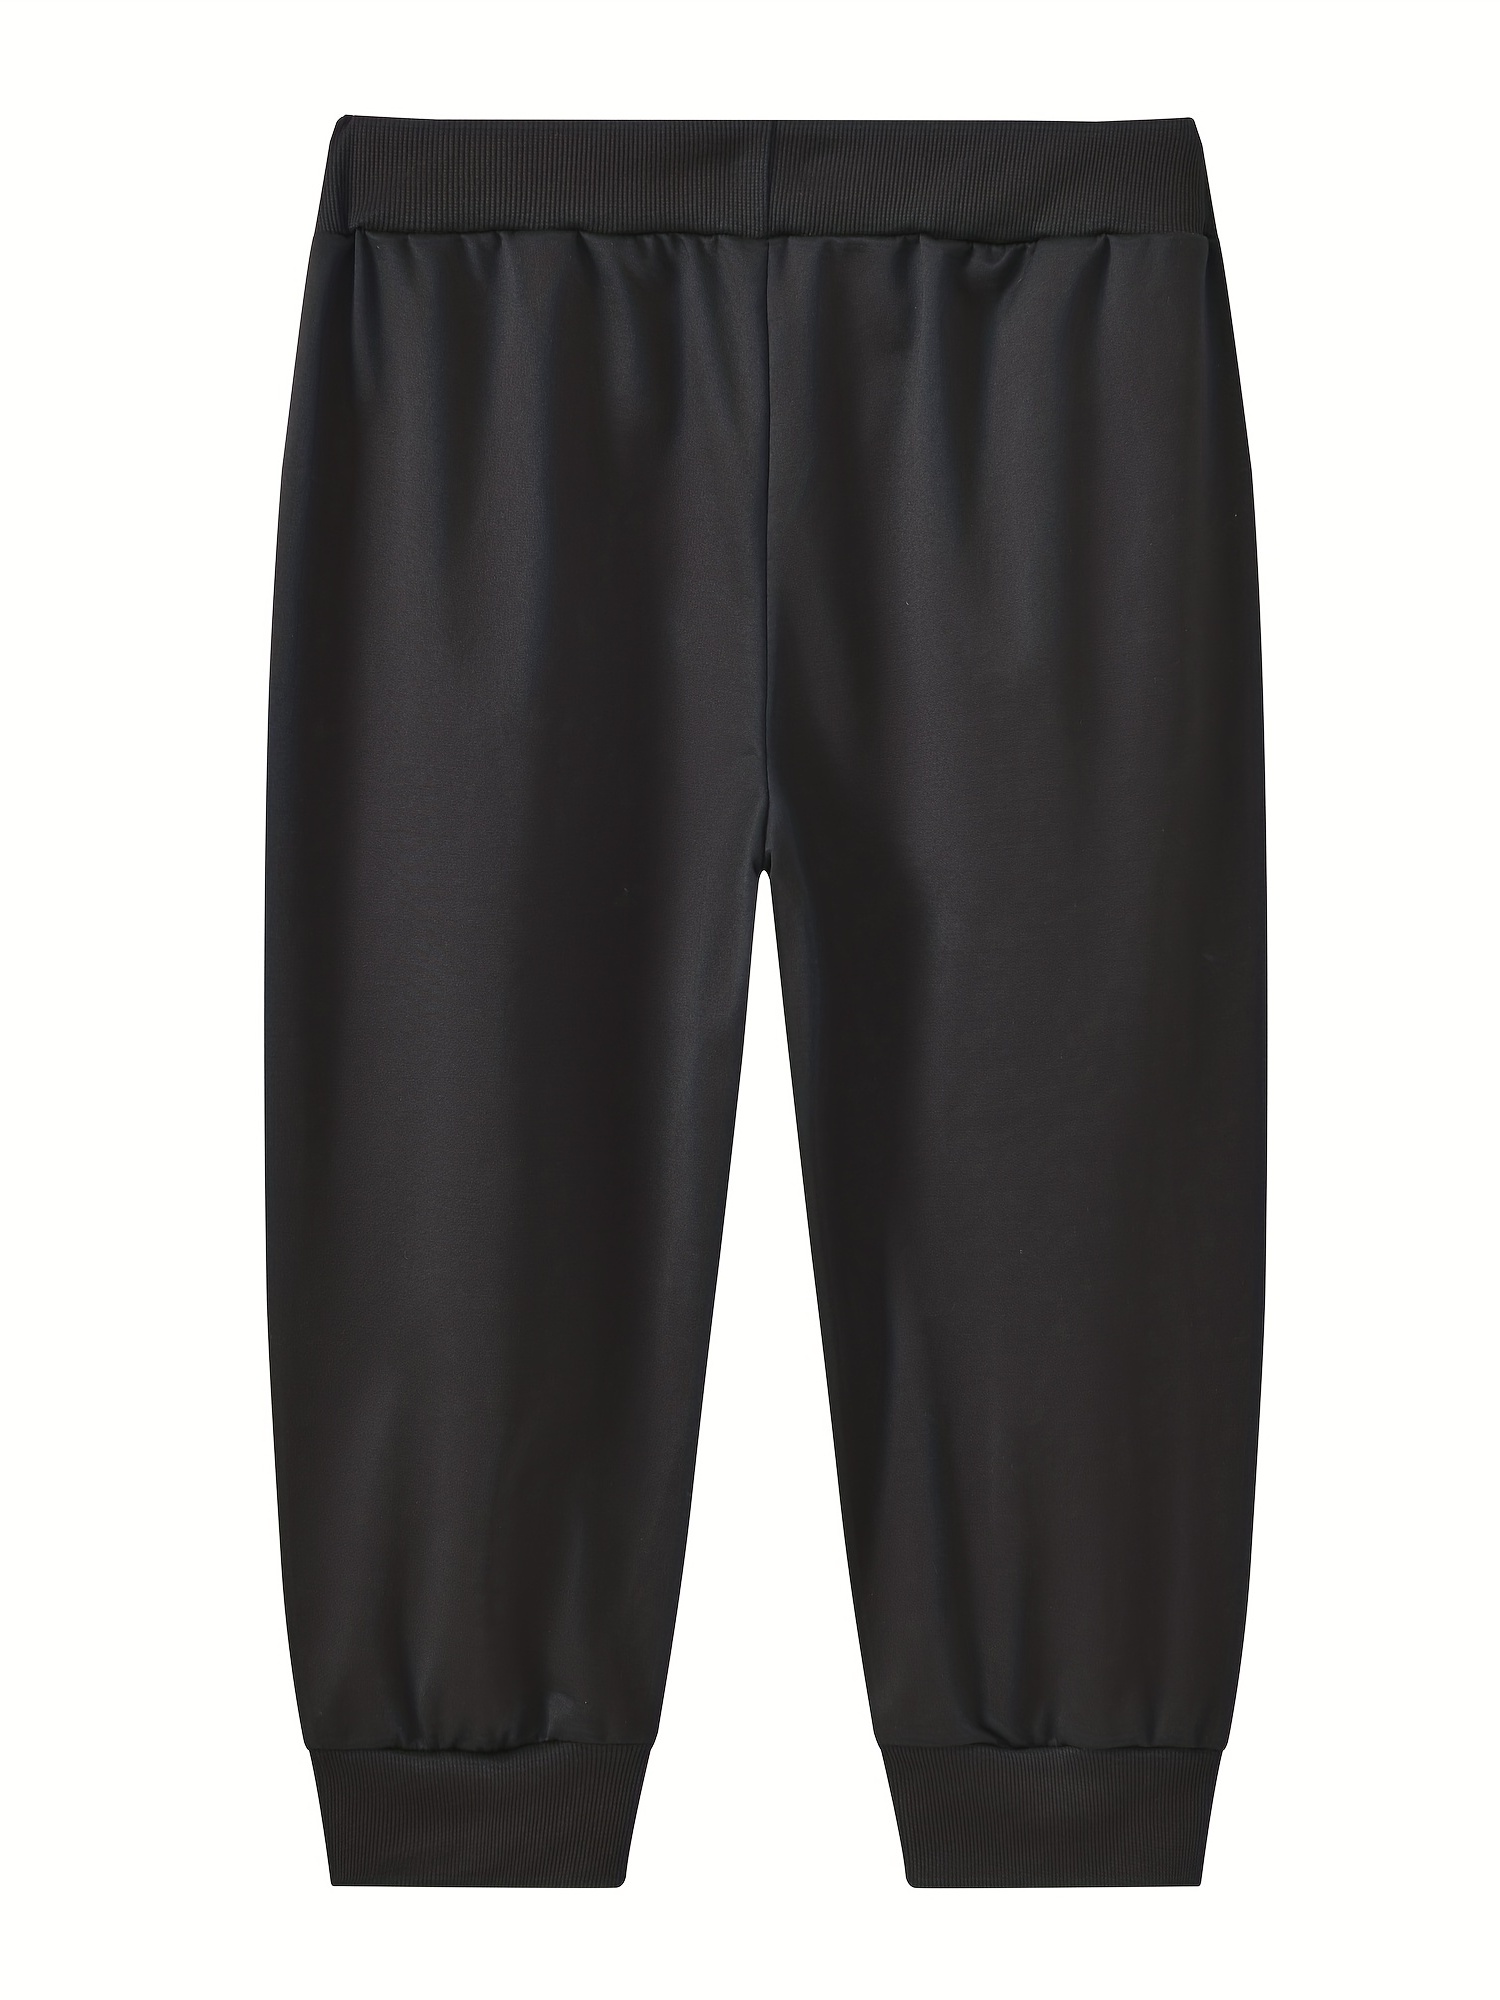 MAGNIVIT Pantalones capri 3/4 para hombre, pantalones cortos de  entrenamiento para gimnasio, debajo de la rodilla, bolsillos con cremallera